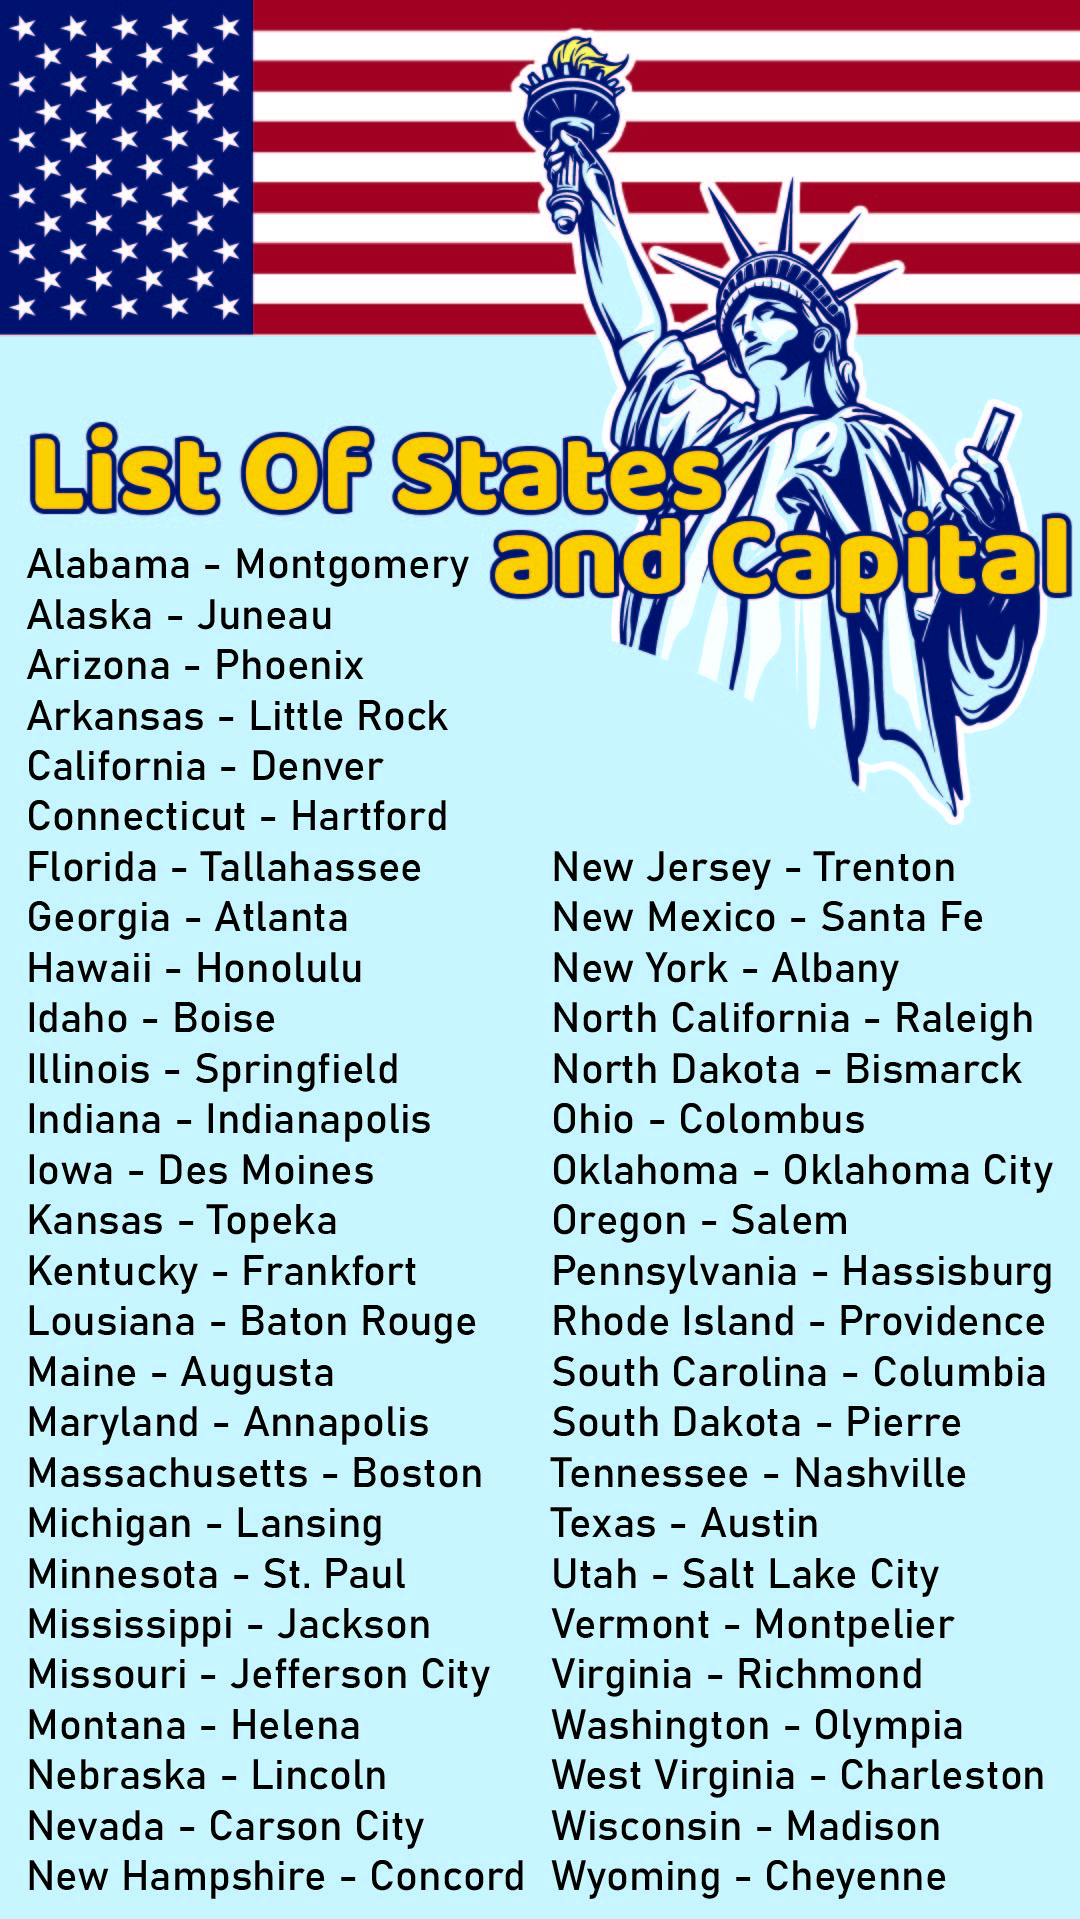 states-and-capitals-printable-list-printable-world-holiday